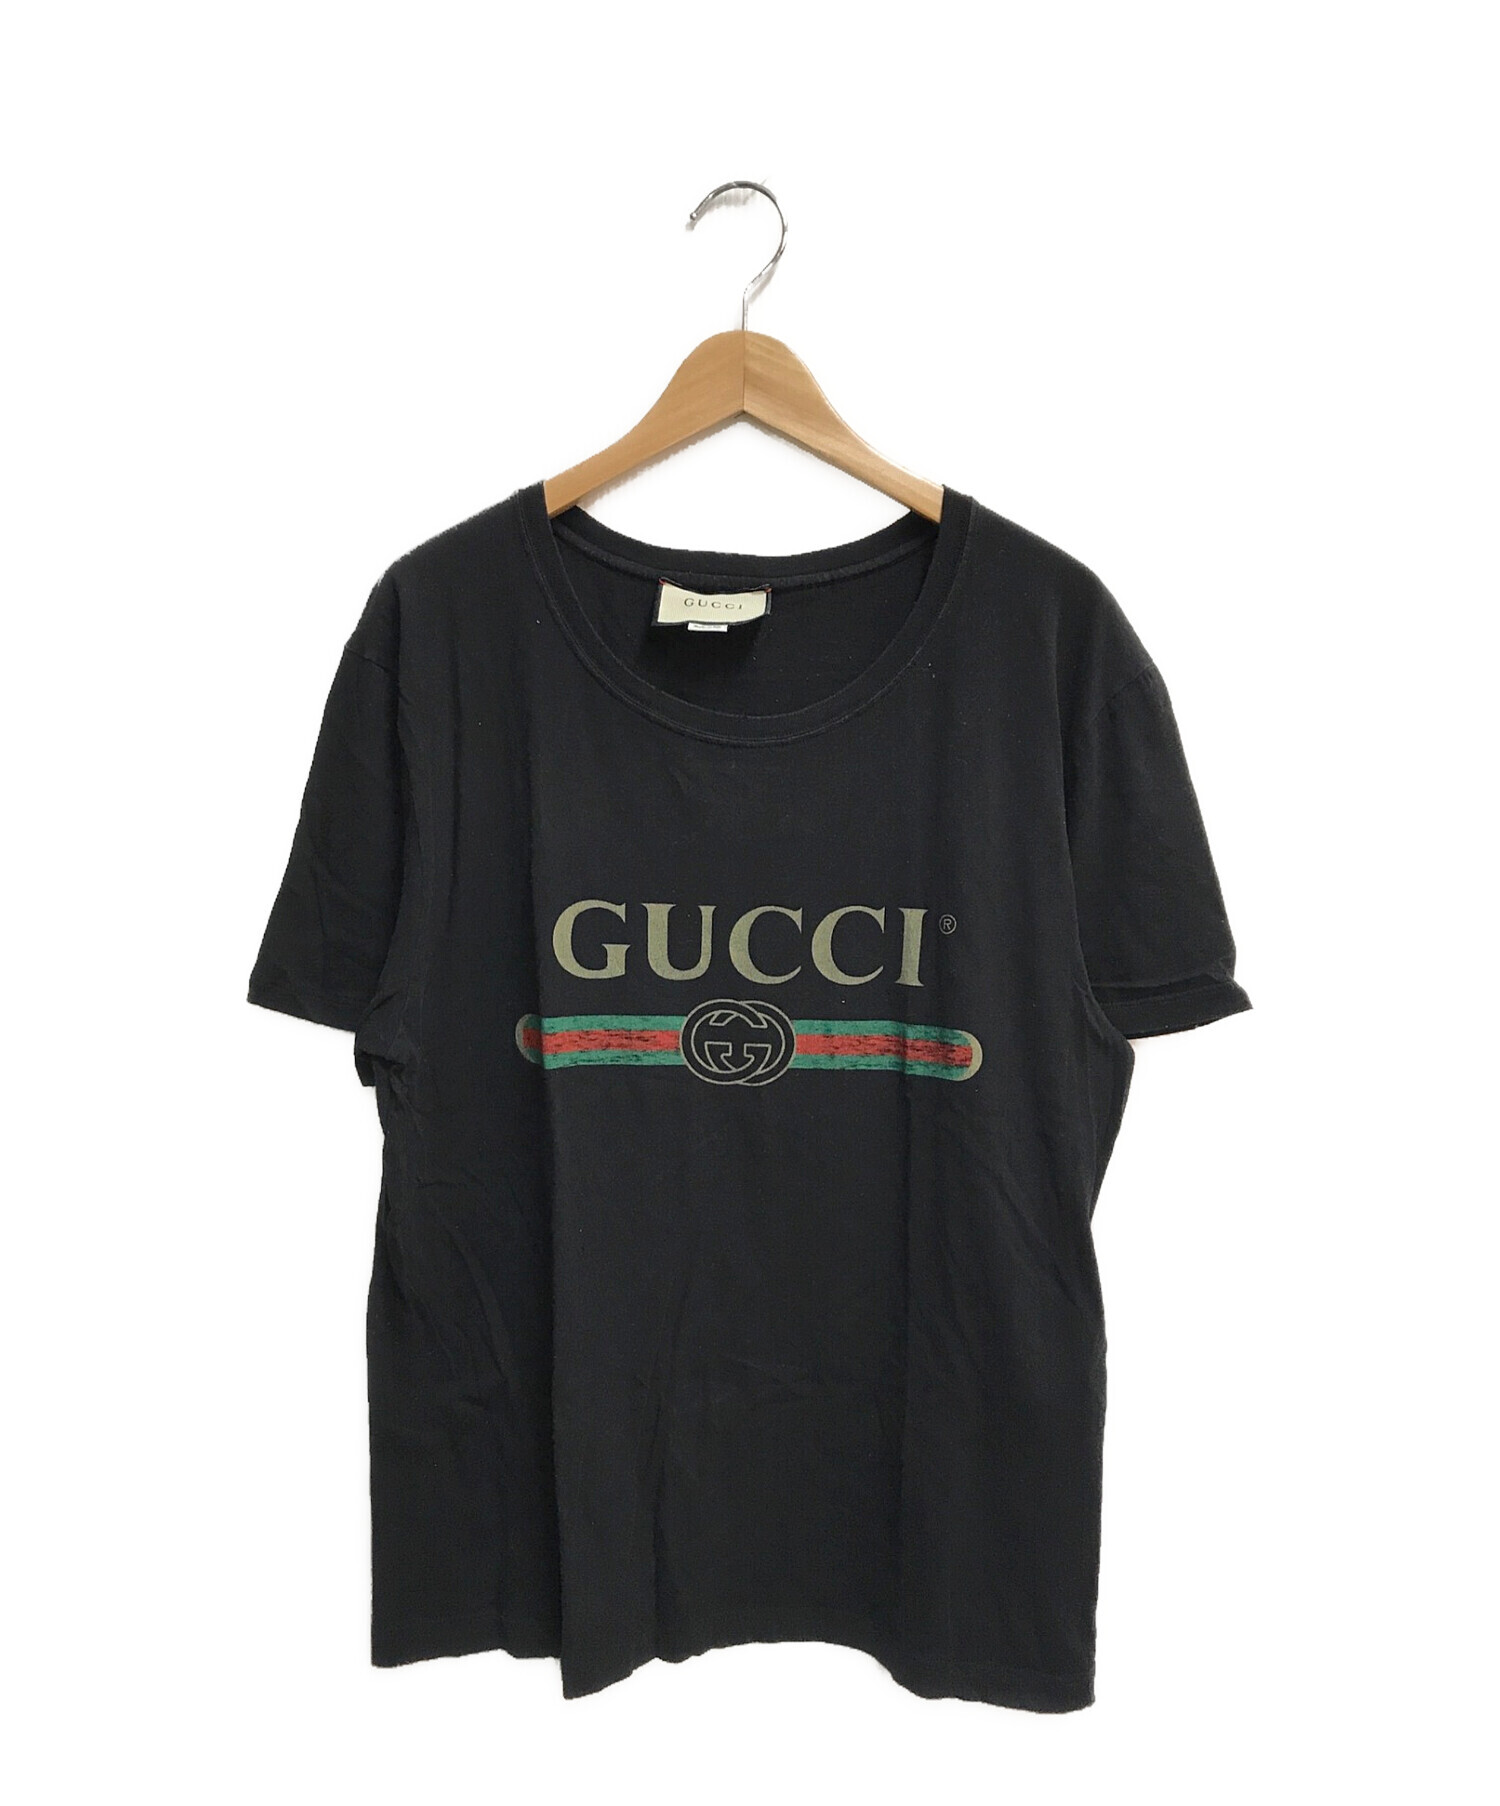 GUCCI (グッチ) ロゴ ウォッシュドオーバーサイズ Tシャツ ブラック サイズ:S